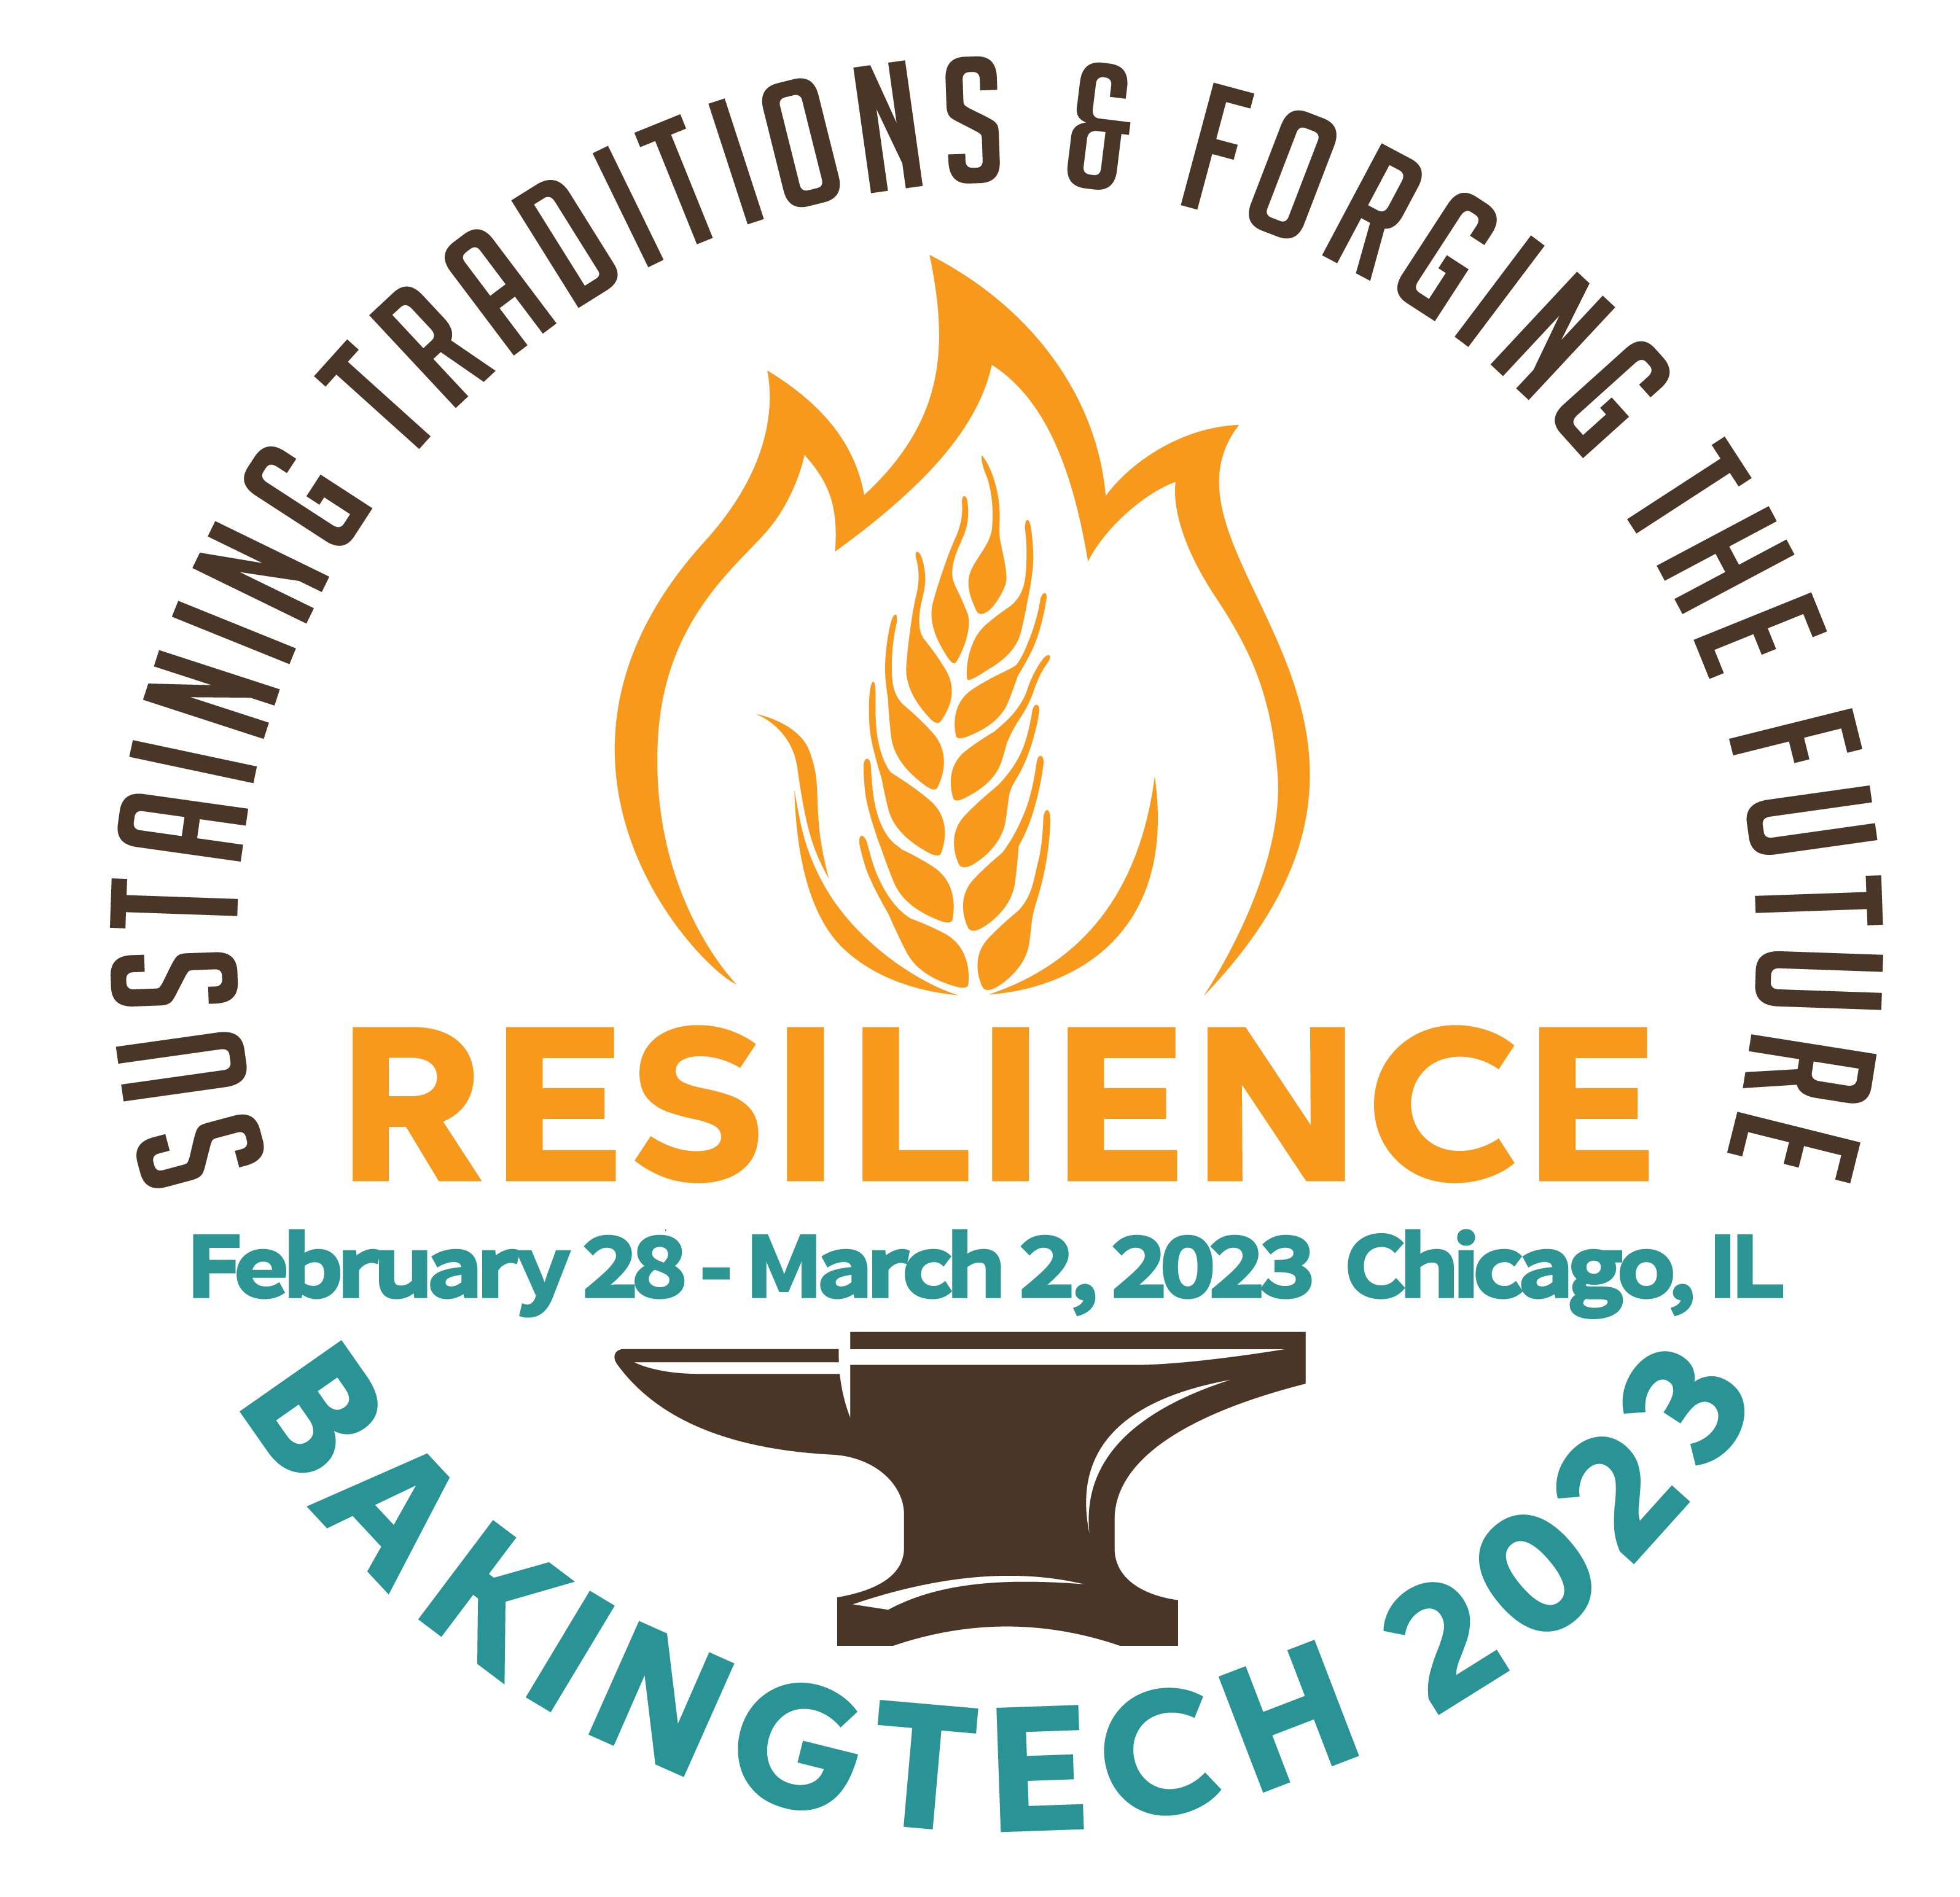 BakingTech 2023 RESILIENCE